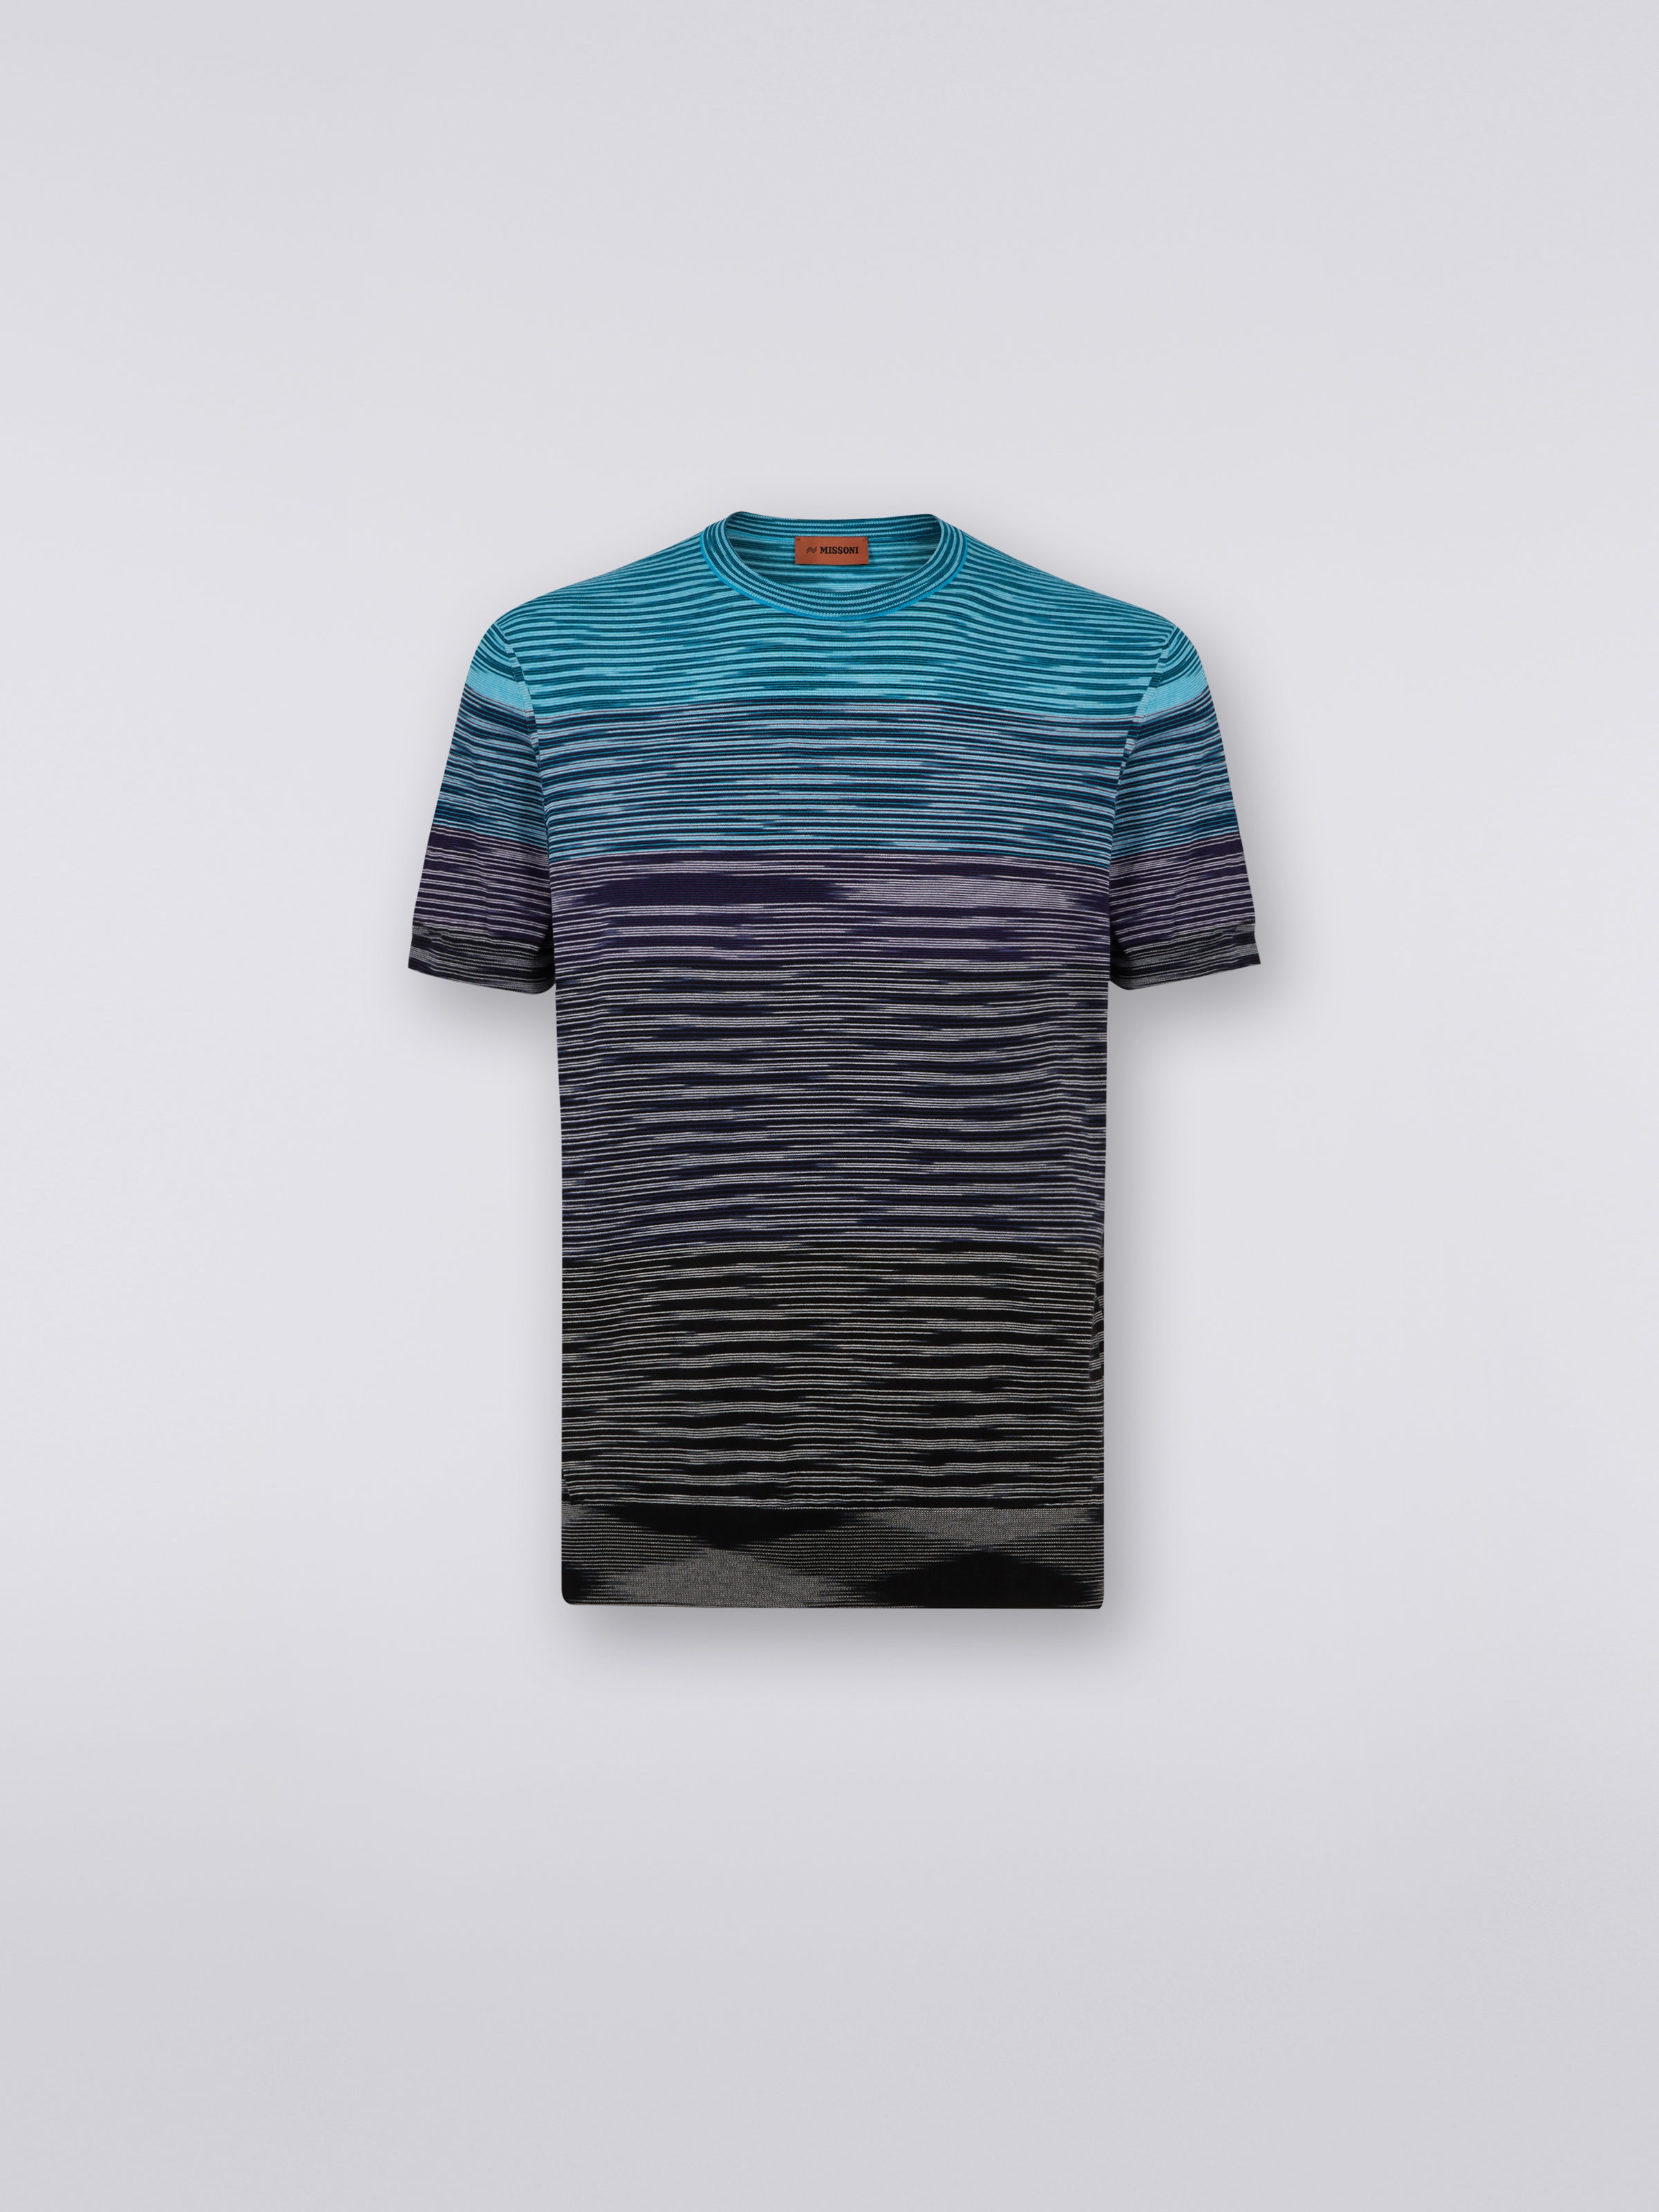 Kurzärmeliges T-Shirt aus Baumwollstrick mit Rundhalsausschnitt und Dégradé-Streifen, Blau, Violett & Schwarz - 0